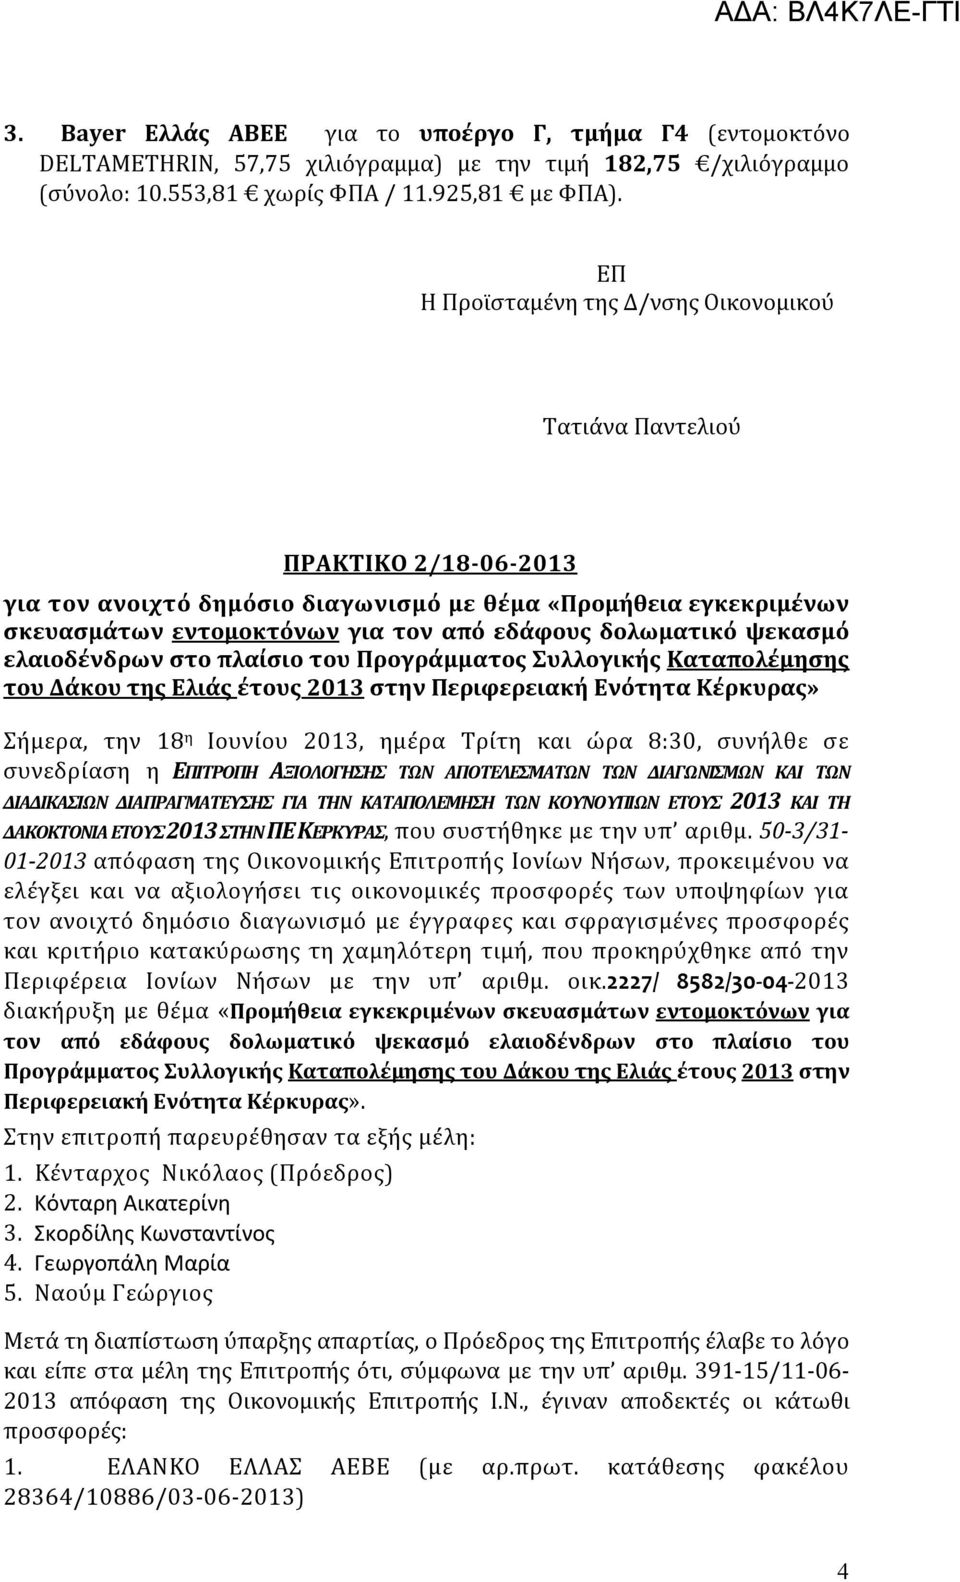 δολωματικό ψεκασμό ελαιοδένδρων στο πλαίσιο του Προγράμματος Συλλογικής Καταπολέμησης του Δάκου της Ελιάς έτους 2013 στην Περιφερειακή Ενότητα Κέρκυρας» Σήμερα, την 18 η Ιουνίου 2013, ημέρα Τρίτη και